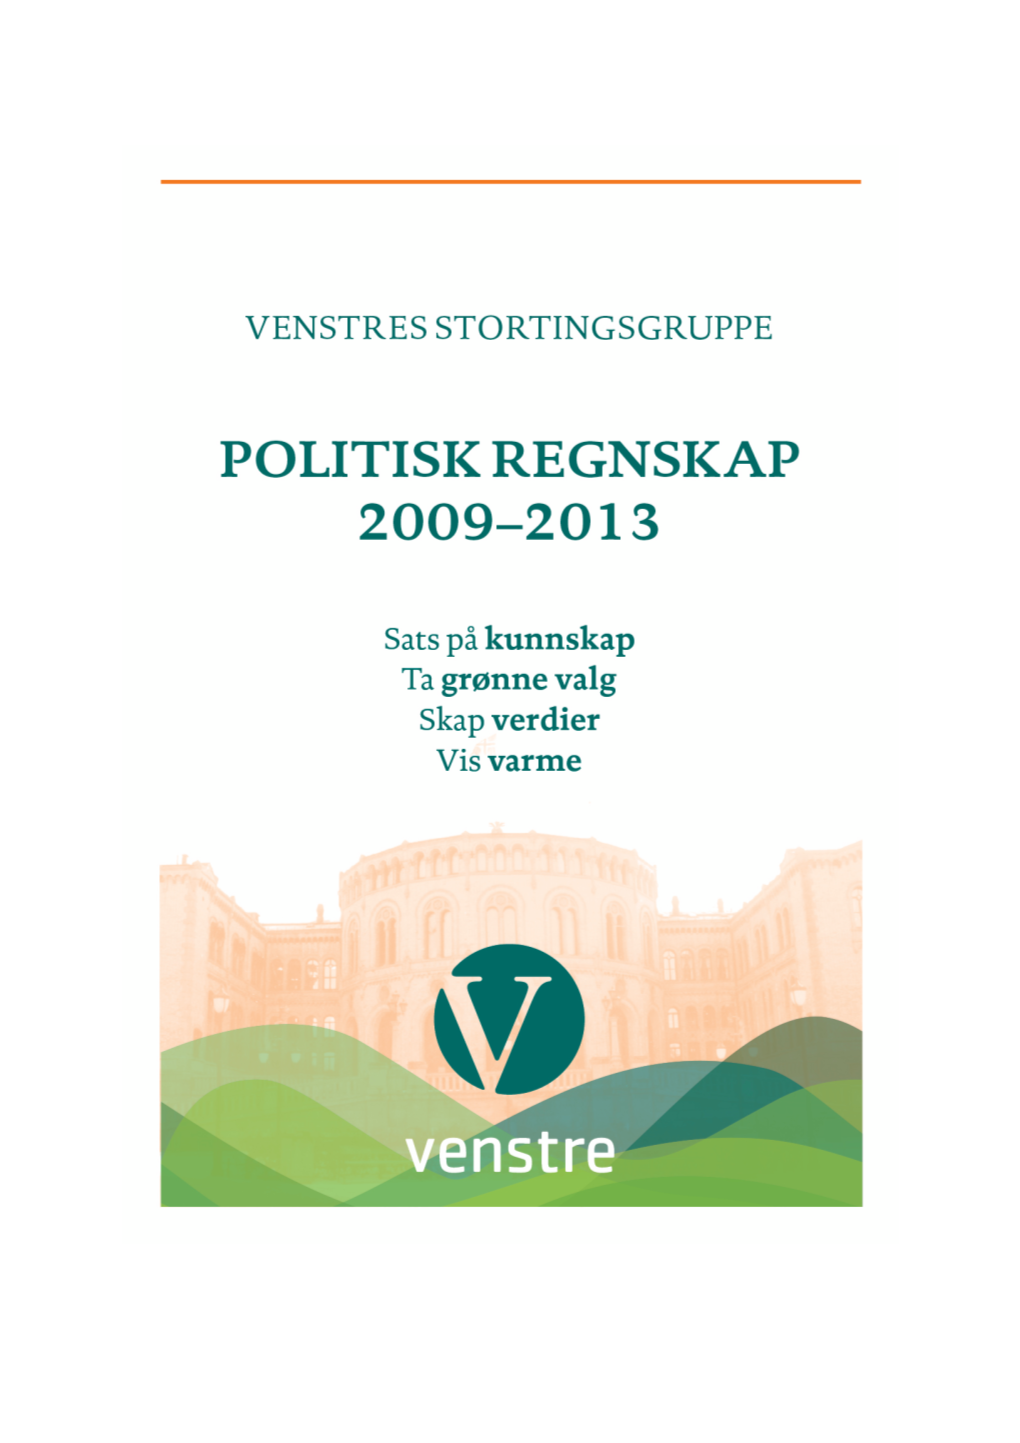 Politisk Regnskap for 2009-2013